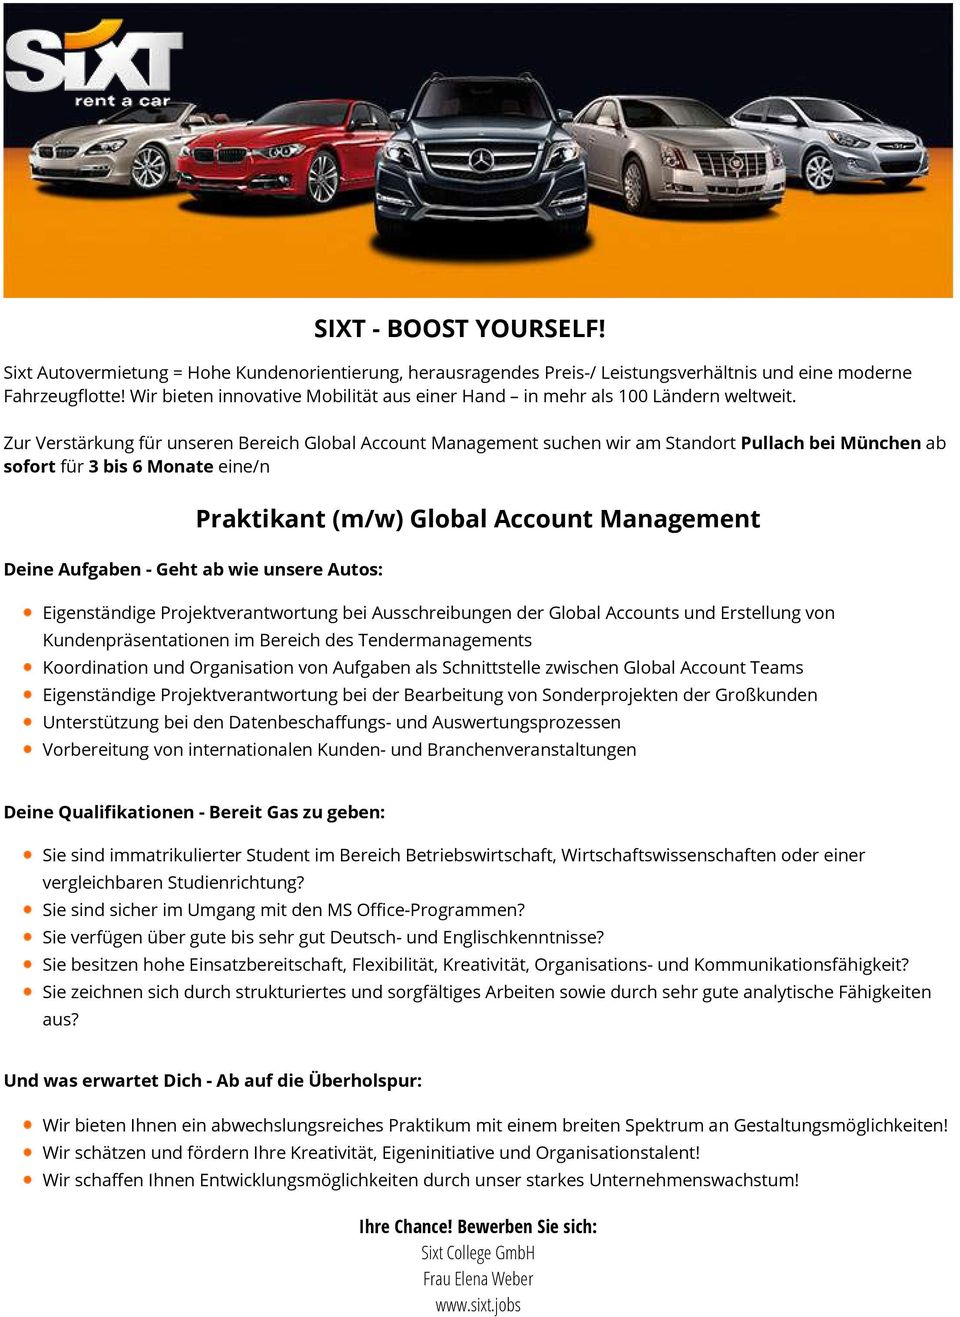 Zur Verstärkung für unseren Bereich Global Account Management suchen wir am Standort Pullach bei München ab sofort für 3 bis 6 Monate eine/n Deine Aufgaben - Geht ab wie unsere Autos: Praktikant